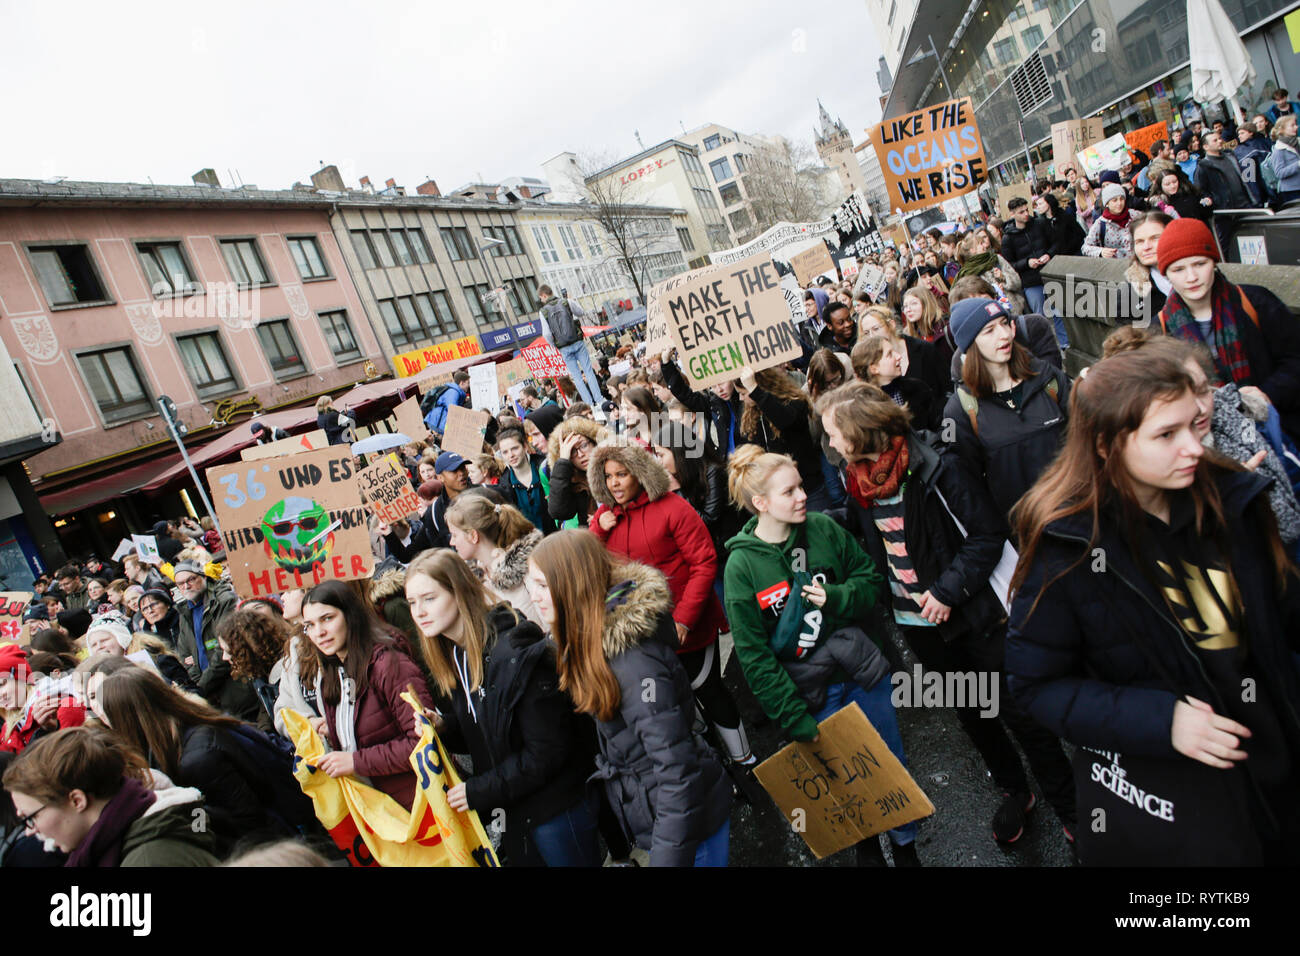 Francoforte, Germania. Il 15 marzo 2019. I manifestanti marzo con striscioni e self made poster attraverso Francoforte. Oltre 6 mila persone (per la maggior parte degli alunni che hanno saltato la scuola per prendere parte alla protesta) hanno marciato attraverso Francoforte, per protestare contro il cambiamento climatico e per l' introduzione di misure contro di essa. La protesta è stata parte del clima in tutto il mondo il giorno di sciopero dal movimento FridaysForFuture, iniziato da Greta Thunberg in Svezia. Credito: Michael Debets/Alamy Live News Foto Stock